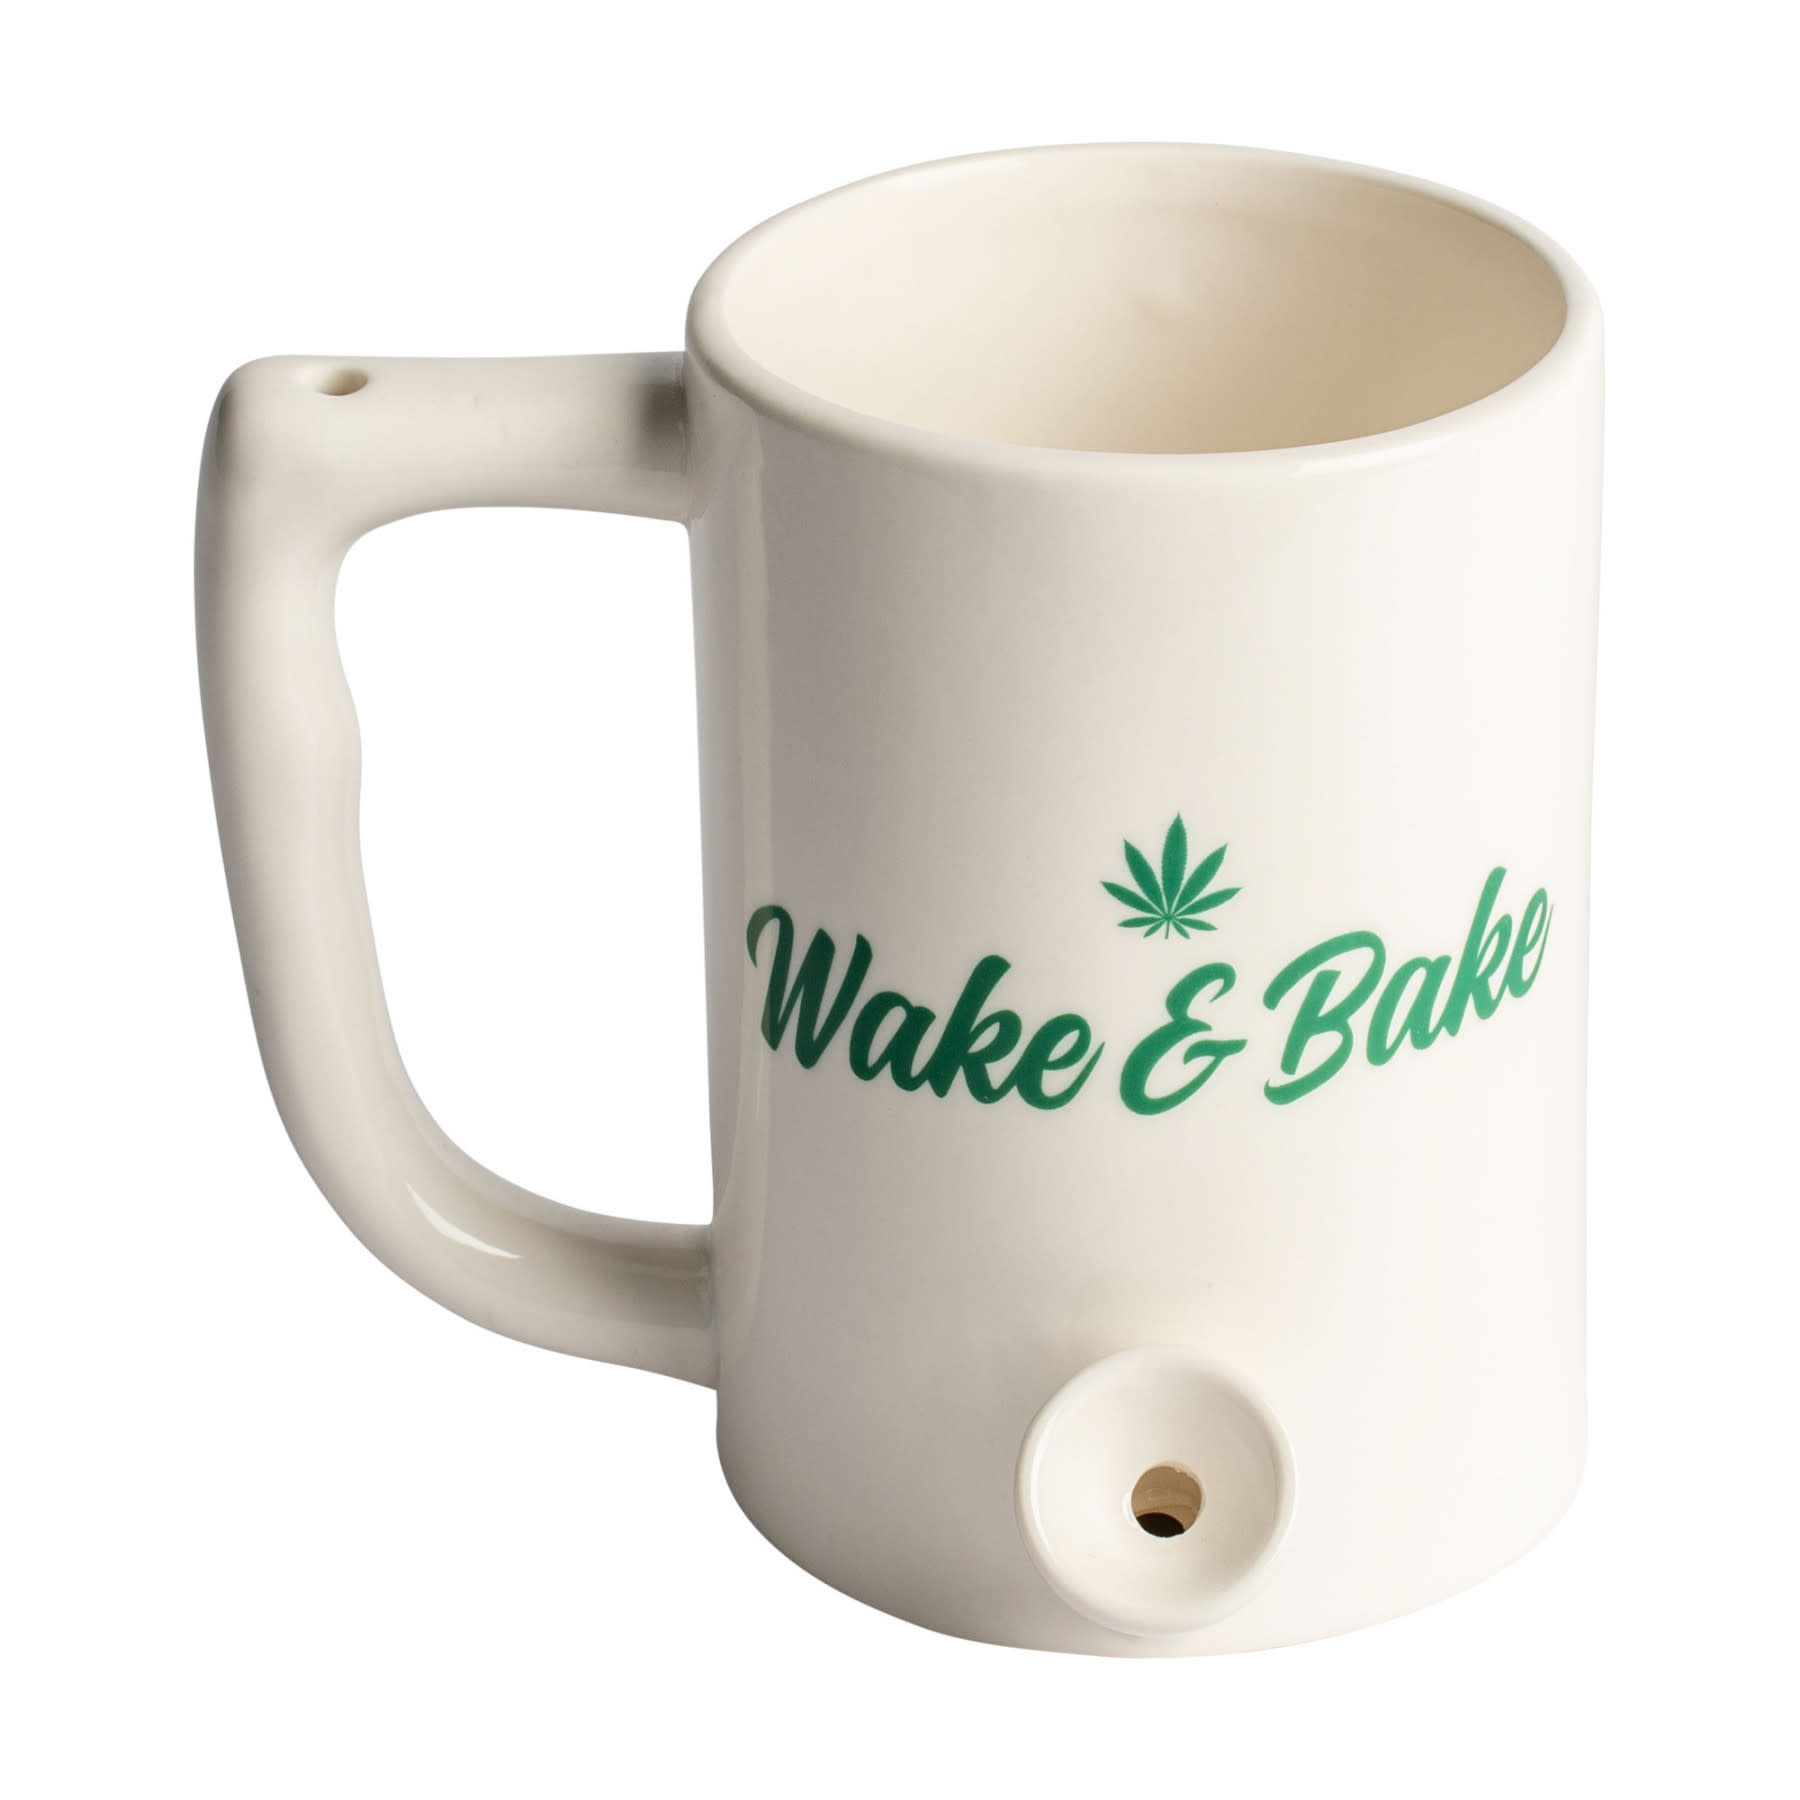 Ceramic Coffee Mug Pipe & Bake" - The Gras